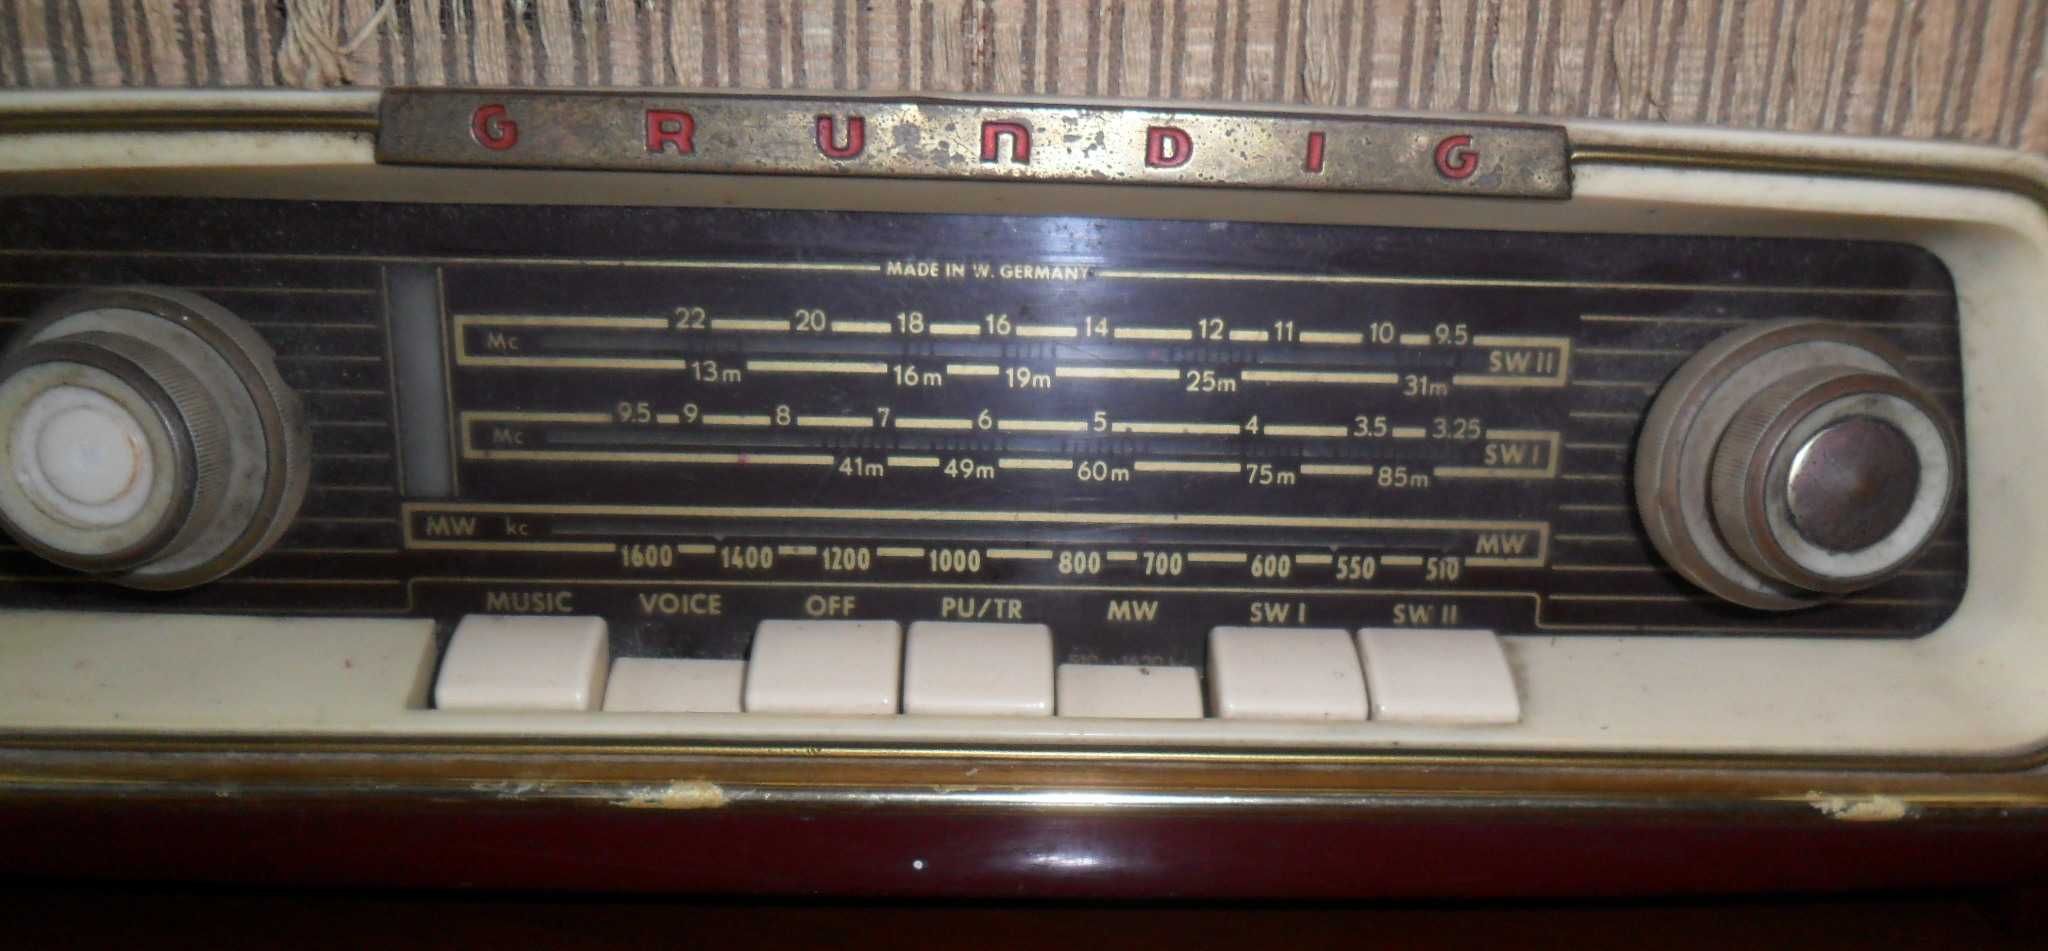 Rádio antigo Grundig a funcionar